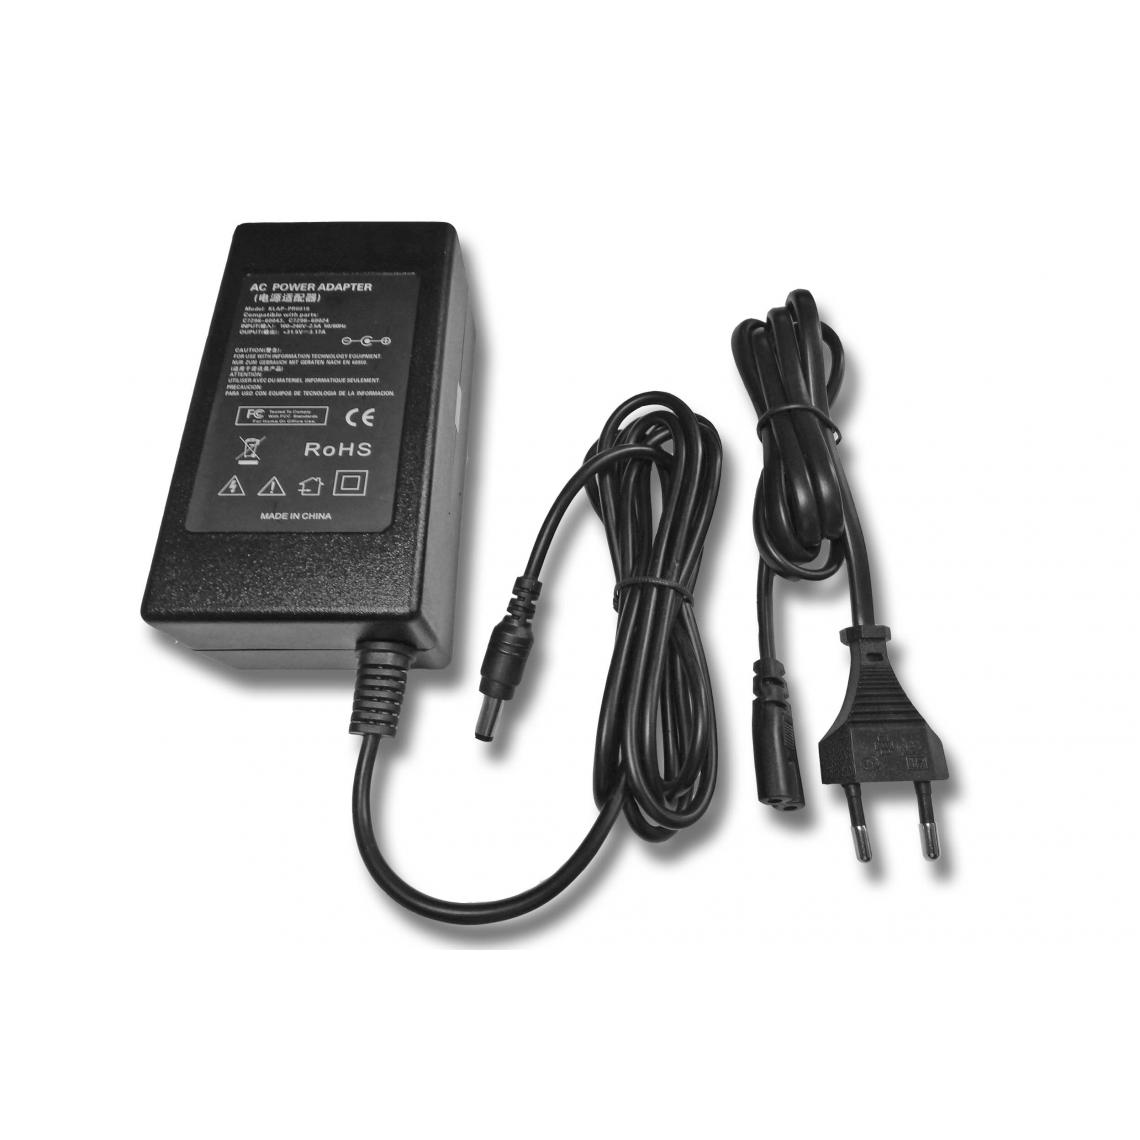 Vhbw - vhbw Imprimante Adaptateur bloc d'alimentation Câble d'alimentation Chargeur compatible avec HP Officejet 7135xi, 7140xi, D125 imprimante - 3.17A - Accessoires alimentation